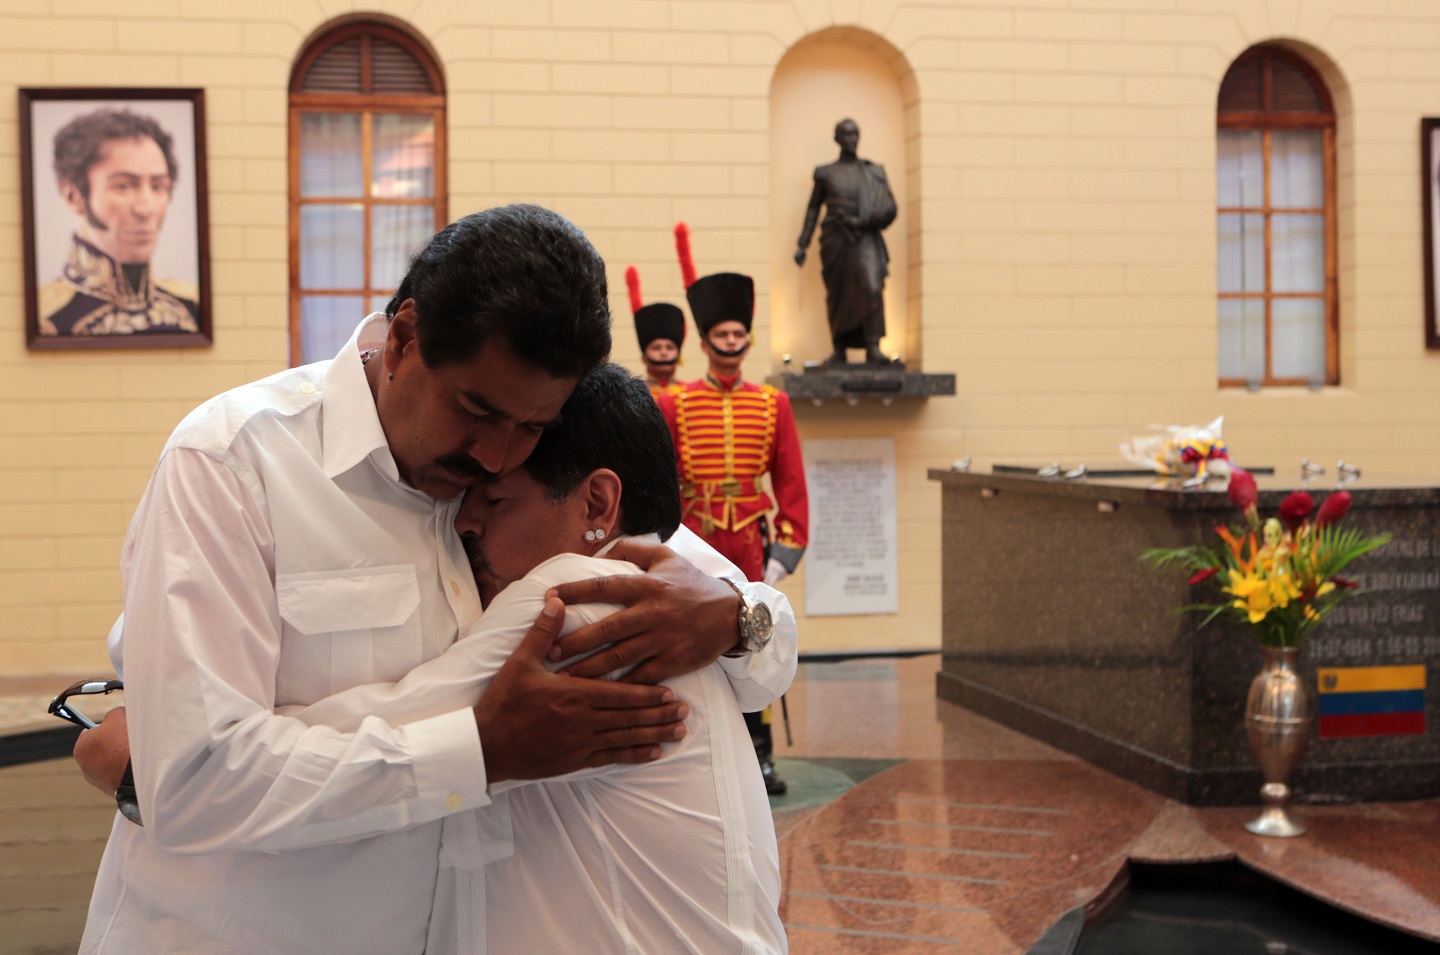 Diego Maradona y Nicolás Maduro